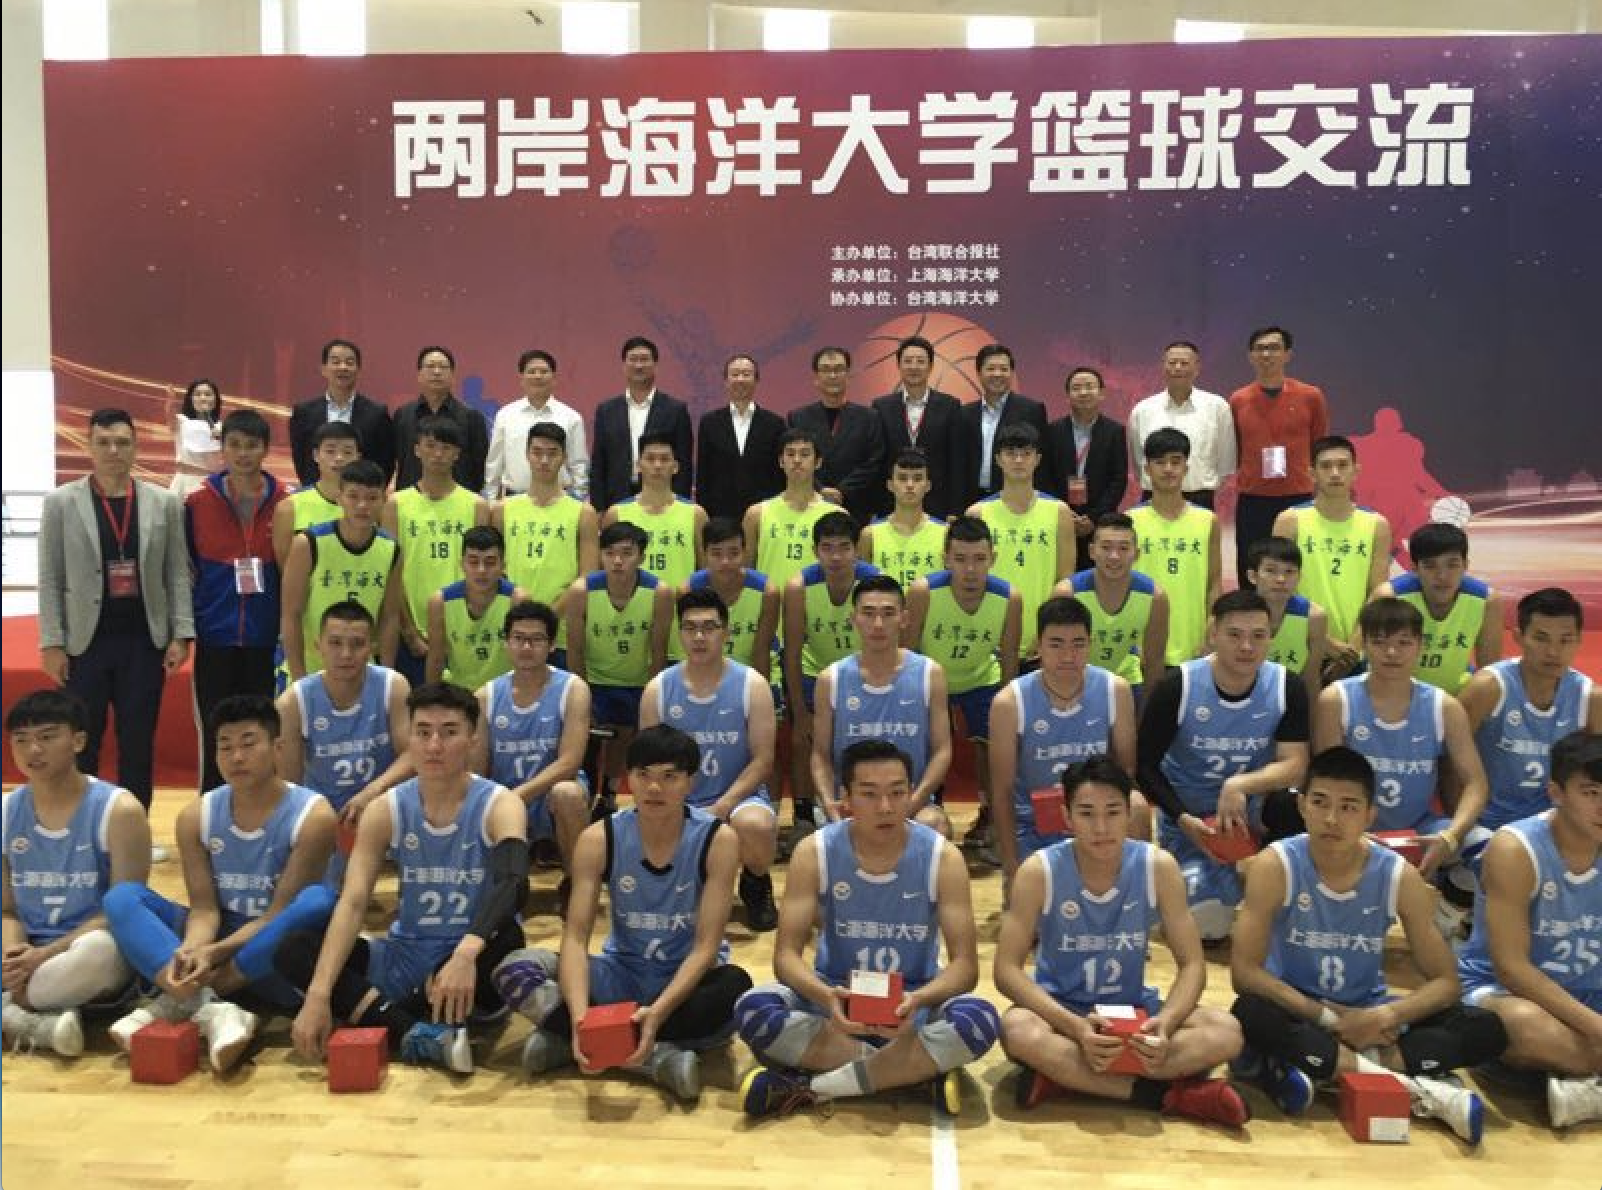 上海海洋大学与台湾海洋大学进行篮球友谊赛,